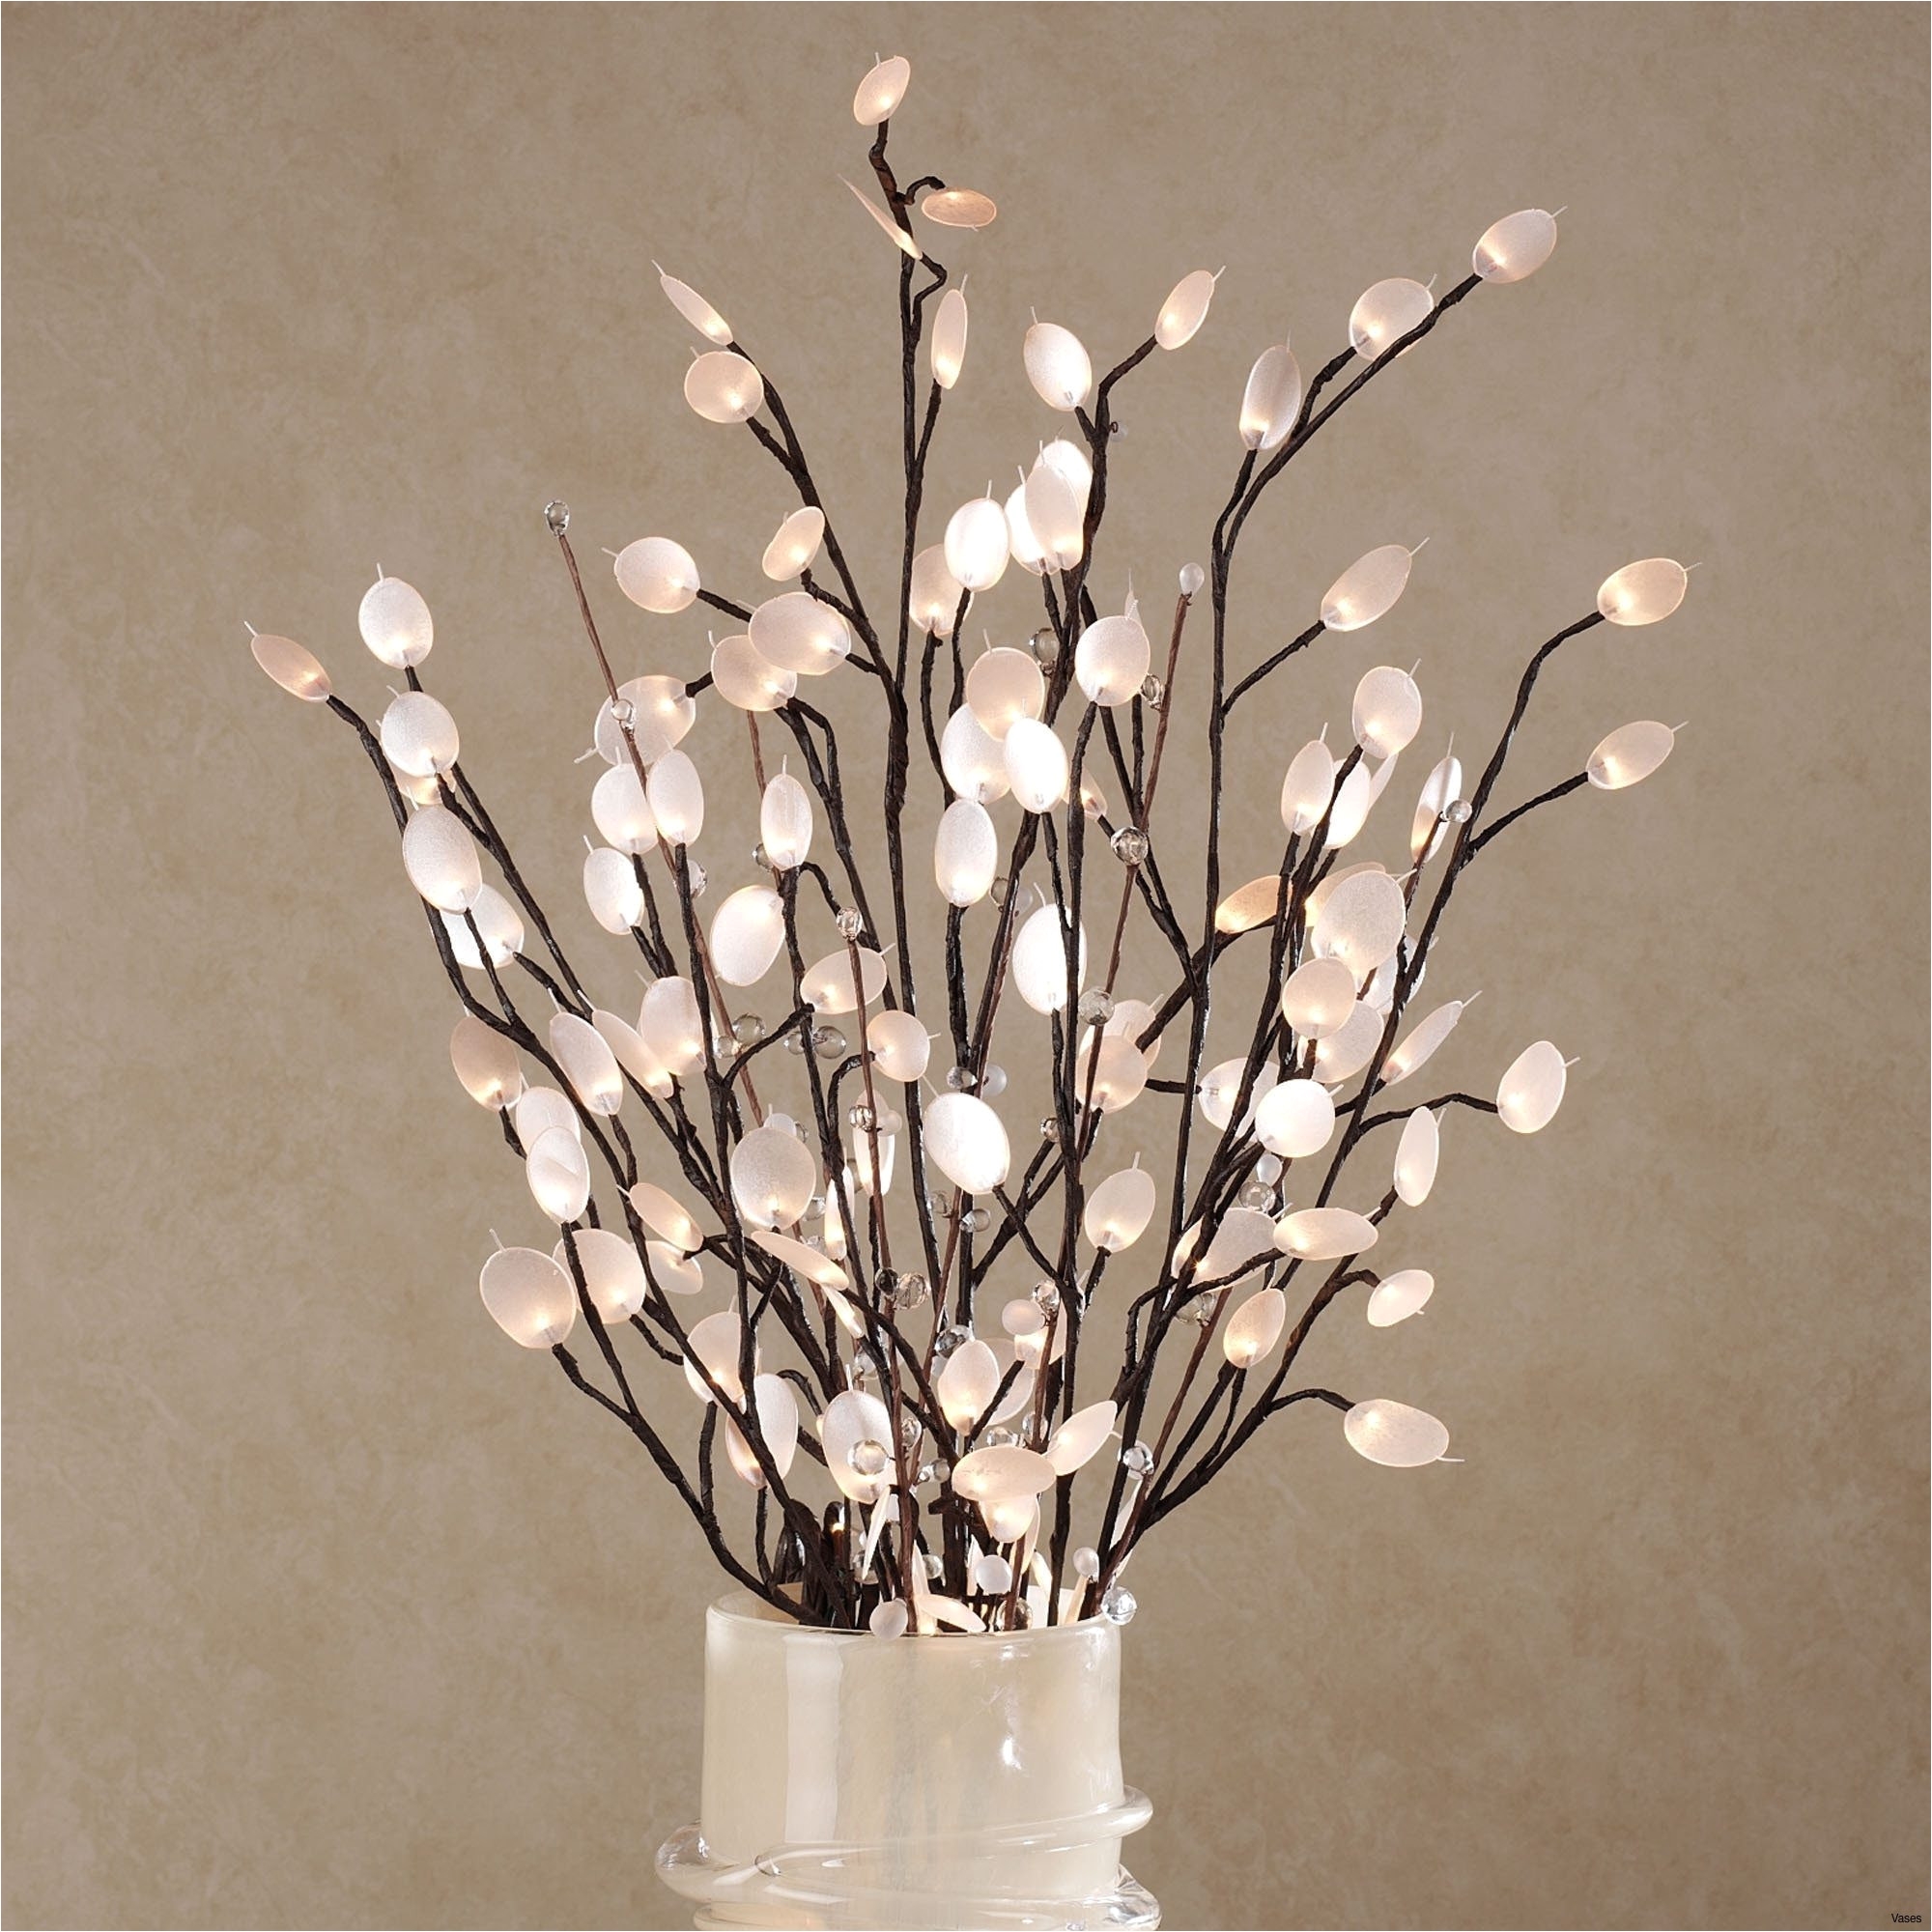 sticks for vases stock vase with sticksh vases sticks in sticksi 0d lights bamboo design